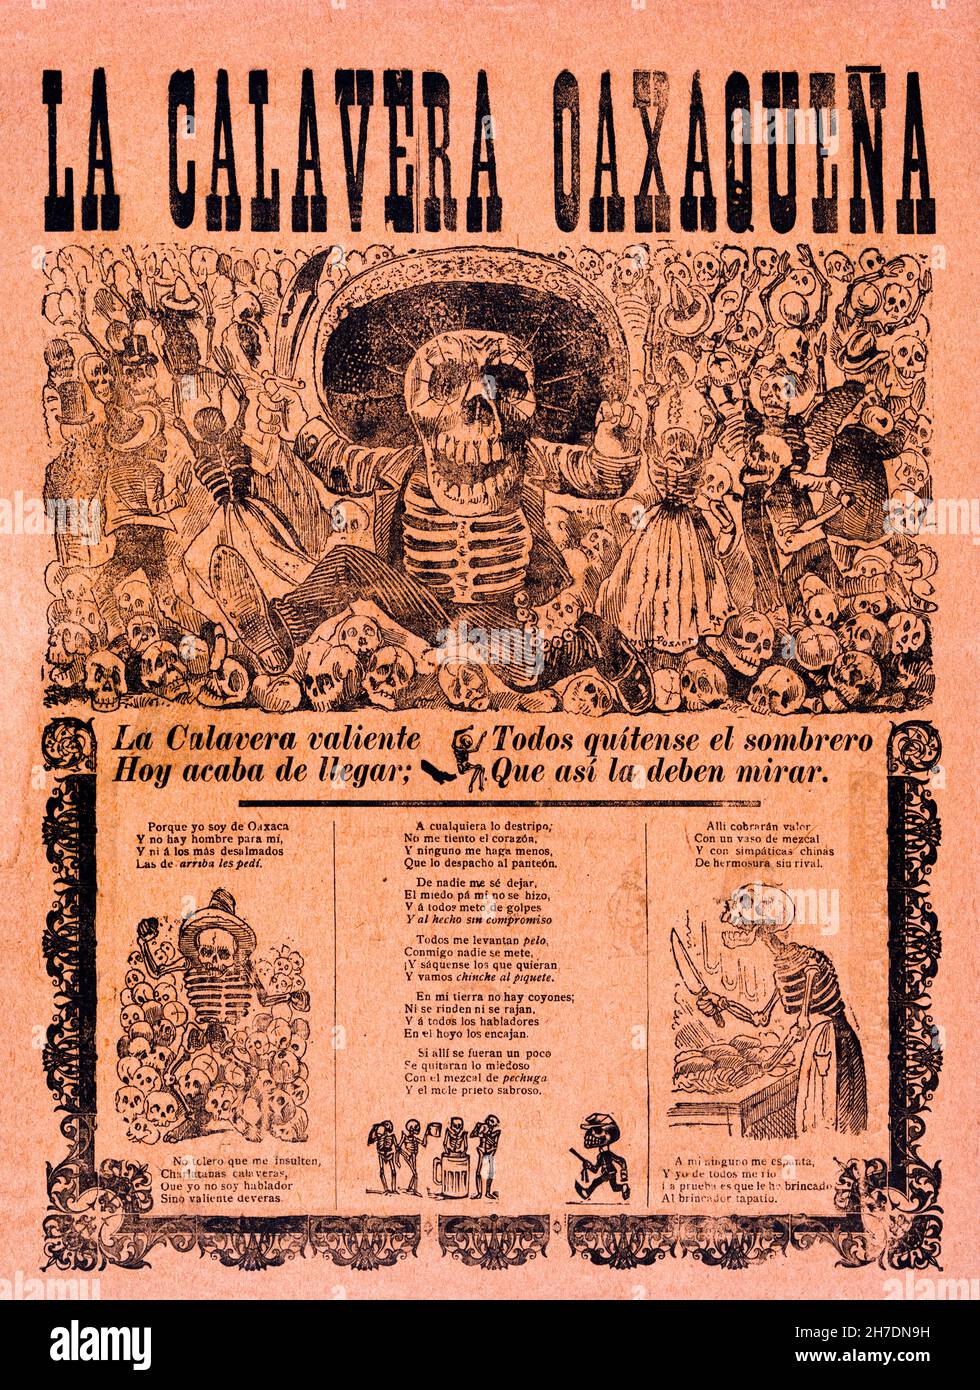 La Calavera Oaxaqueña Oaxaqueña, cartel de José Guadalupe Posada, 1903 Foto de stock